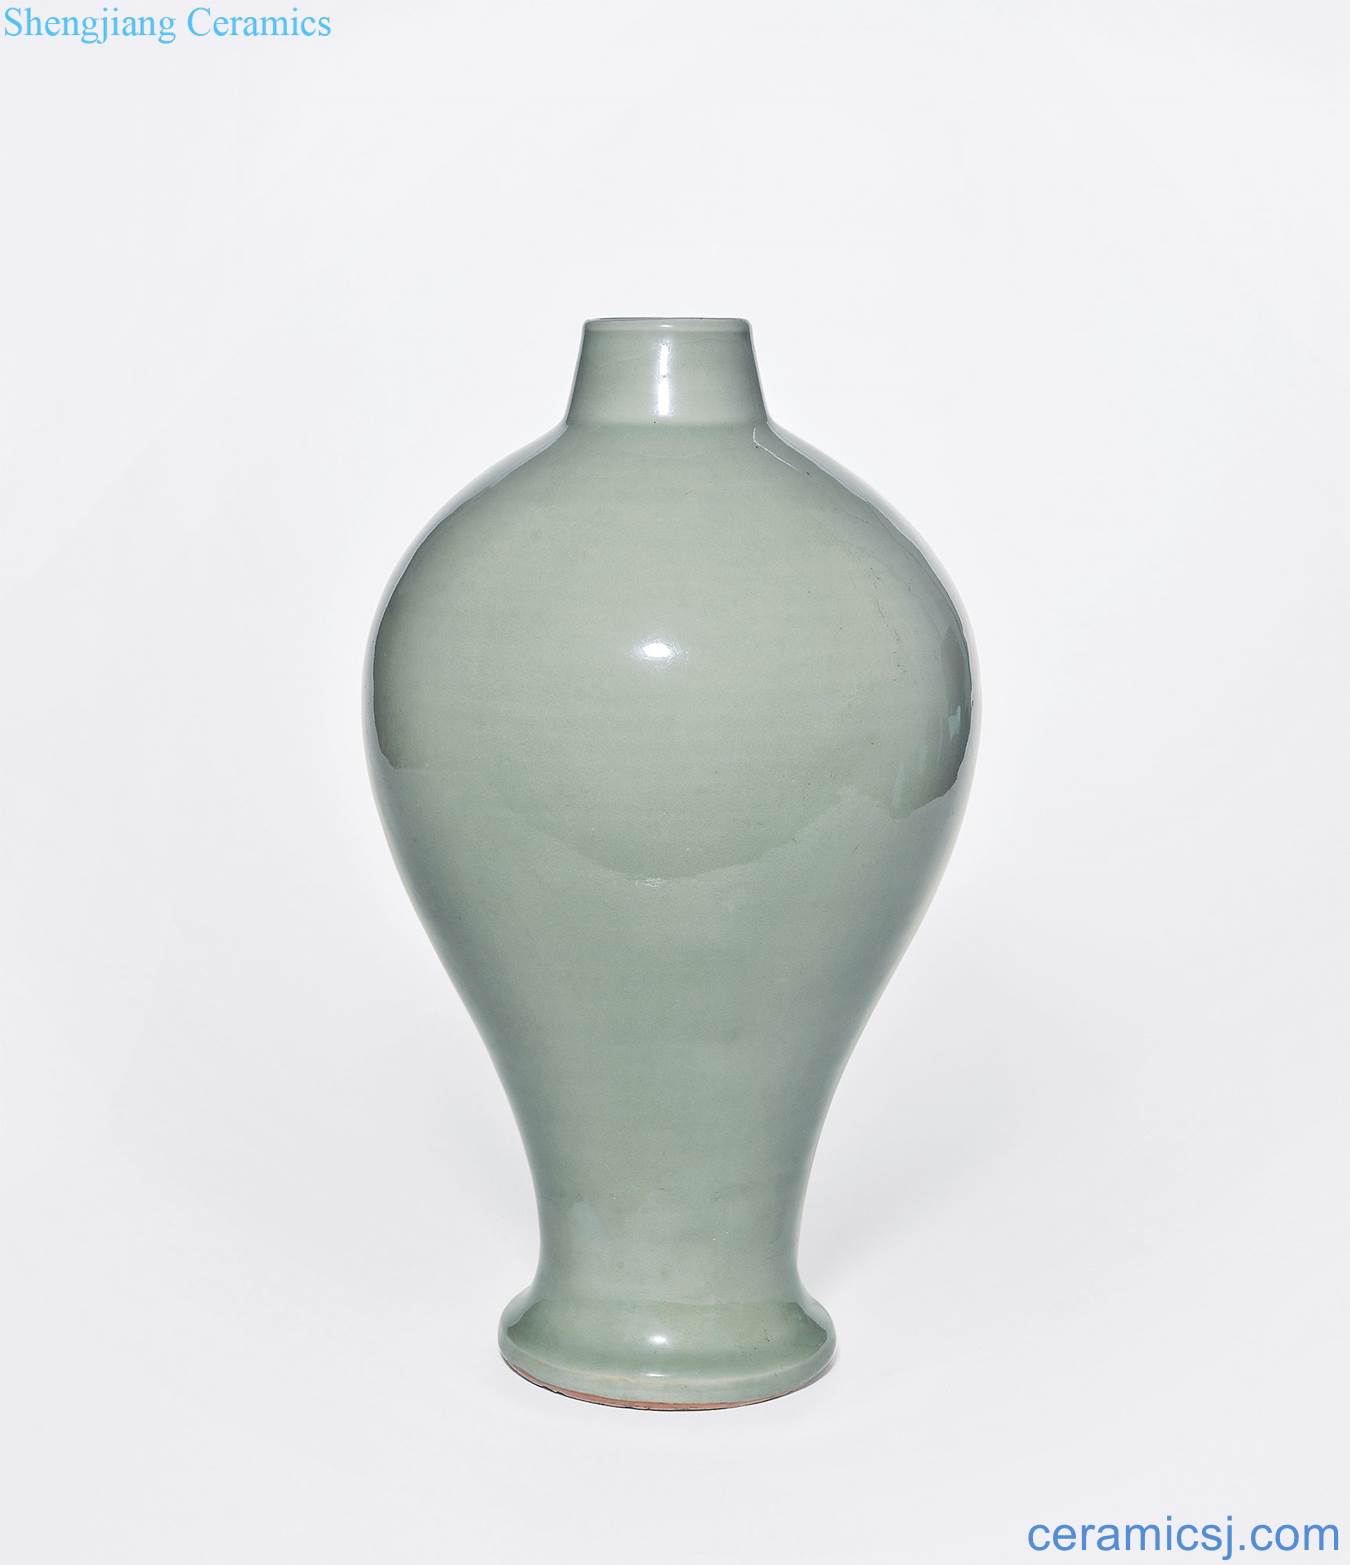 Early Ming dynasty Longquan celadon glaze plum bottle